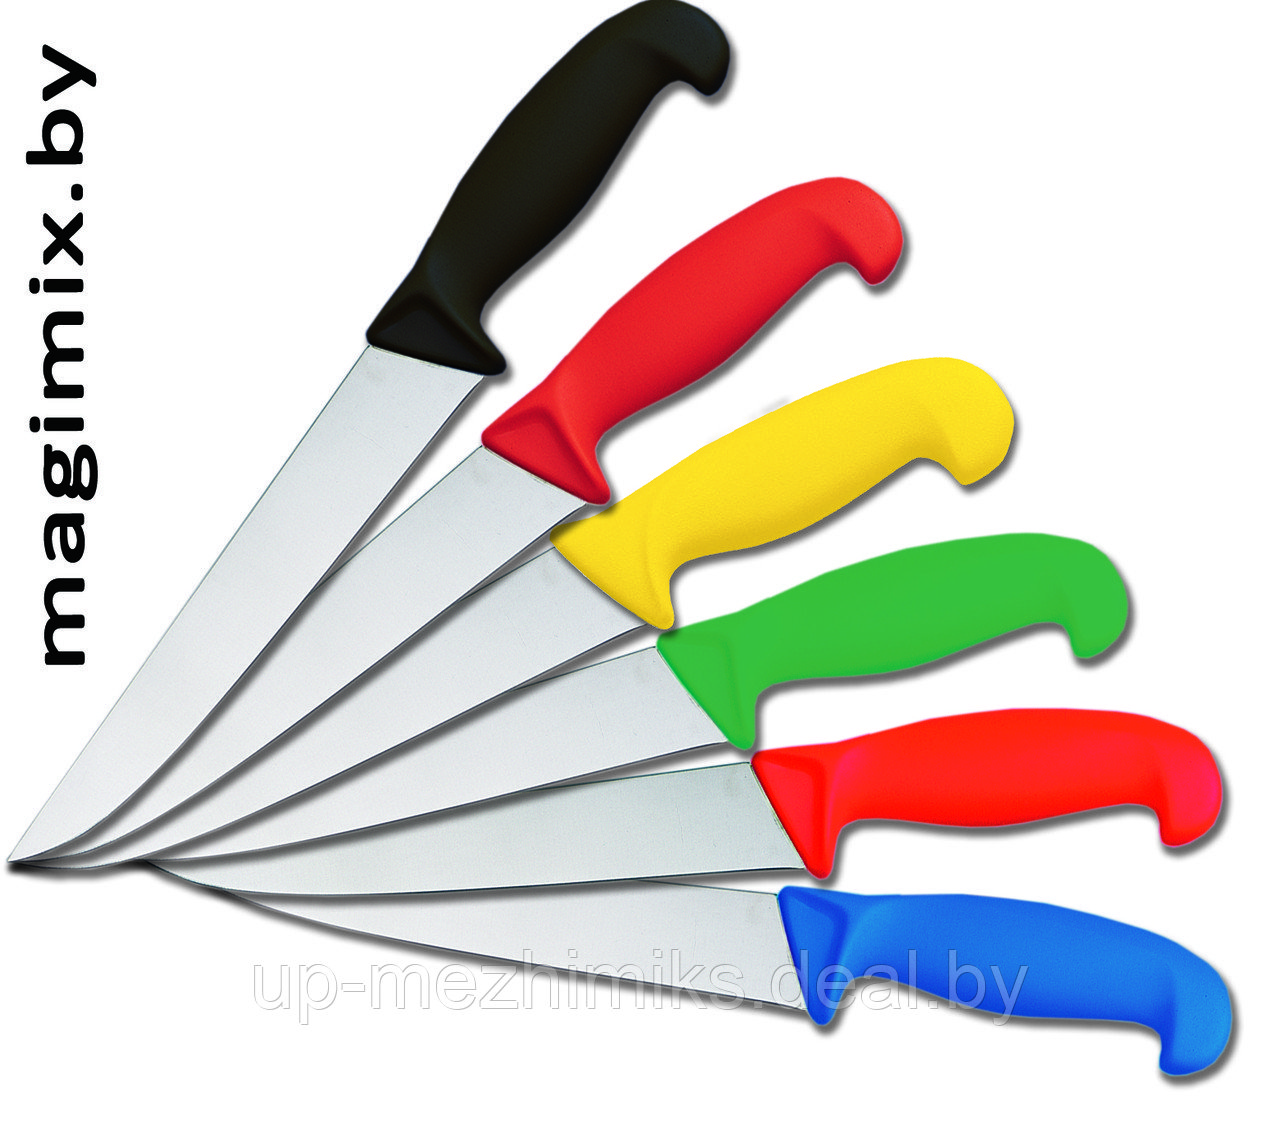 Ножи профессиональные EICKER (Германия)